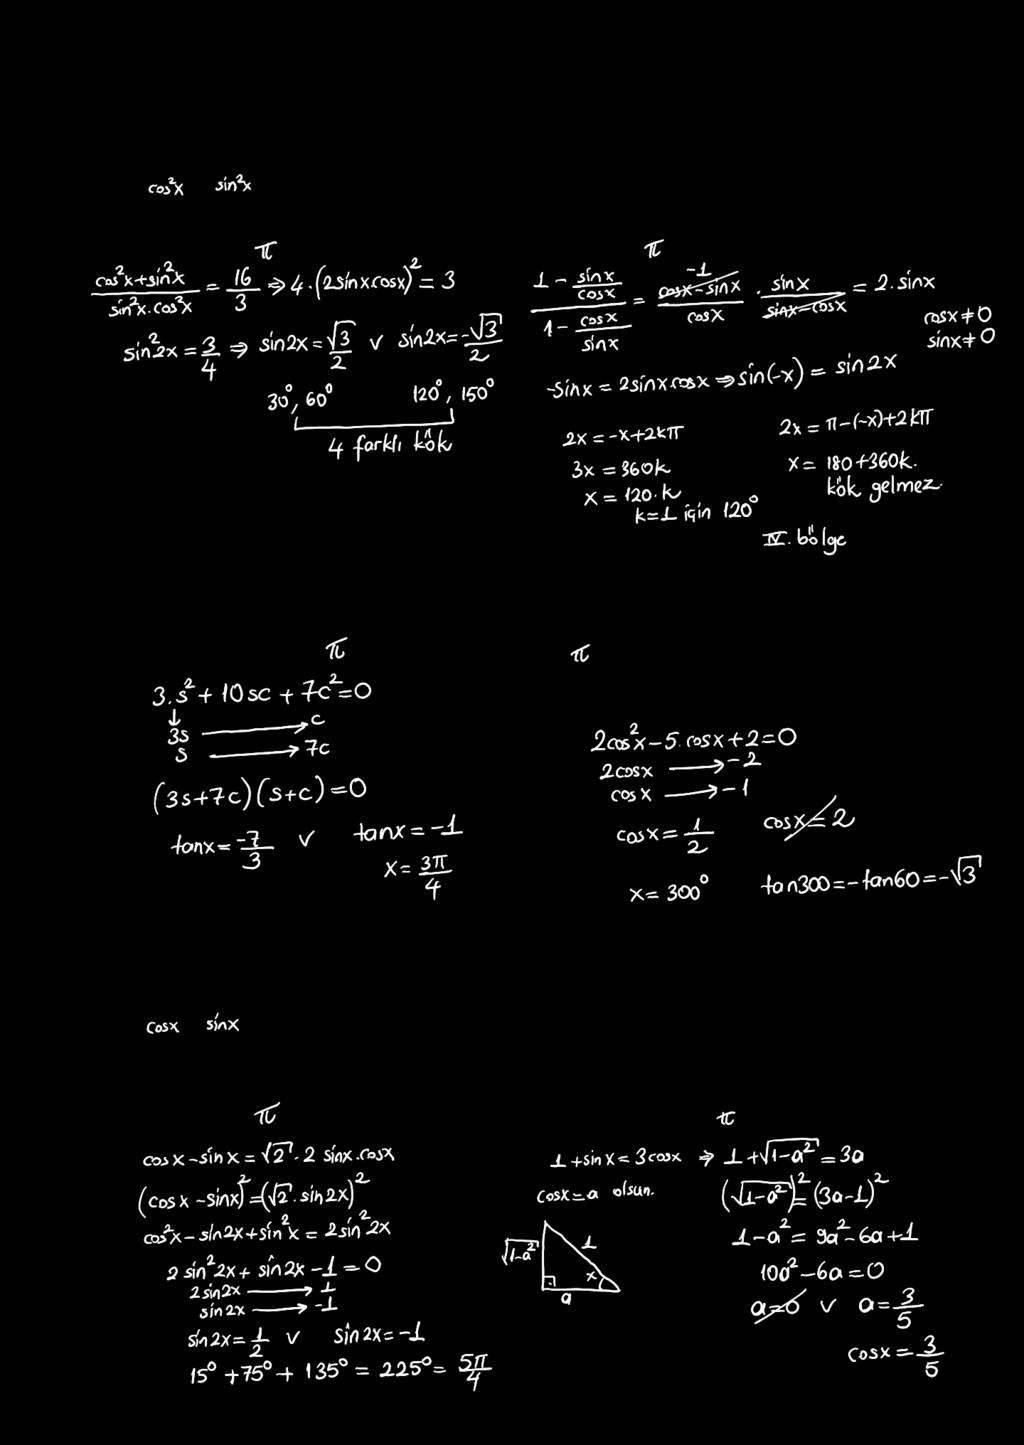 TGOOMTK KM 7. + = sin cos 0. tan = sin cot denkleminin [0, p) aalığında kaç kökü vadı? denkleminin [0, p] aalığında kaç kökü vadı? ) ) ) ) ) ) 0 ) ) ) ) 8.